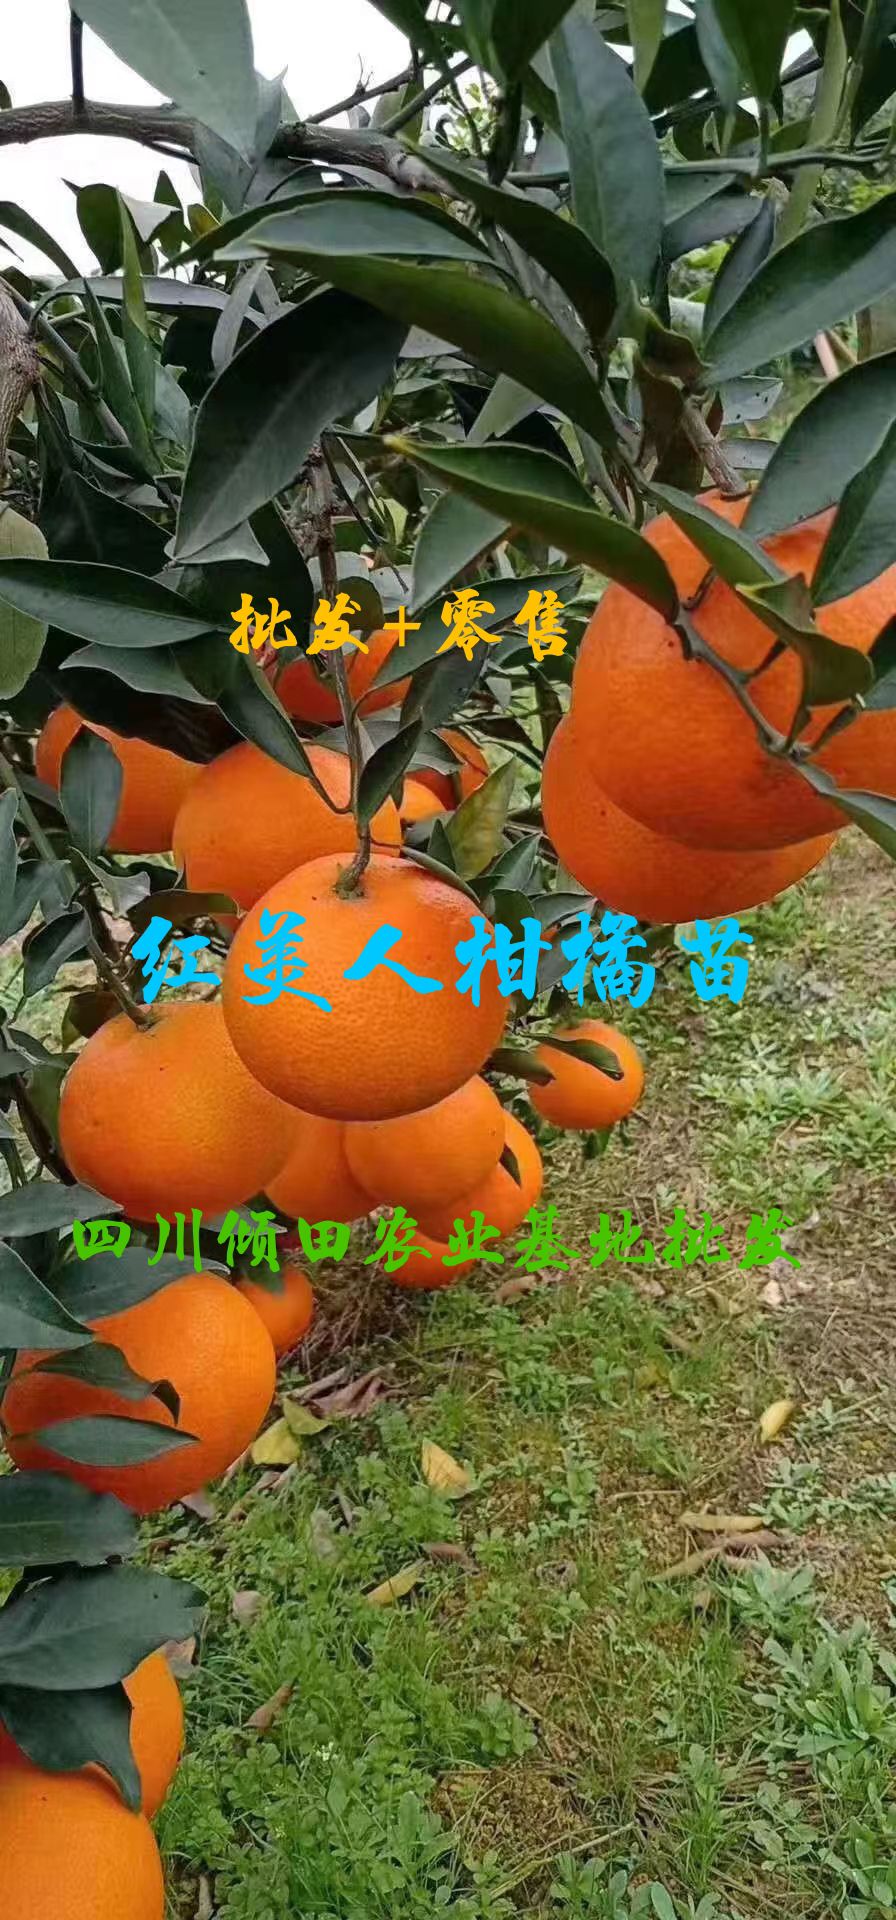 简阳市红美人柑桔苗  红美人柑橘苗红美人爱媛28号柑桔苗